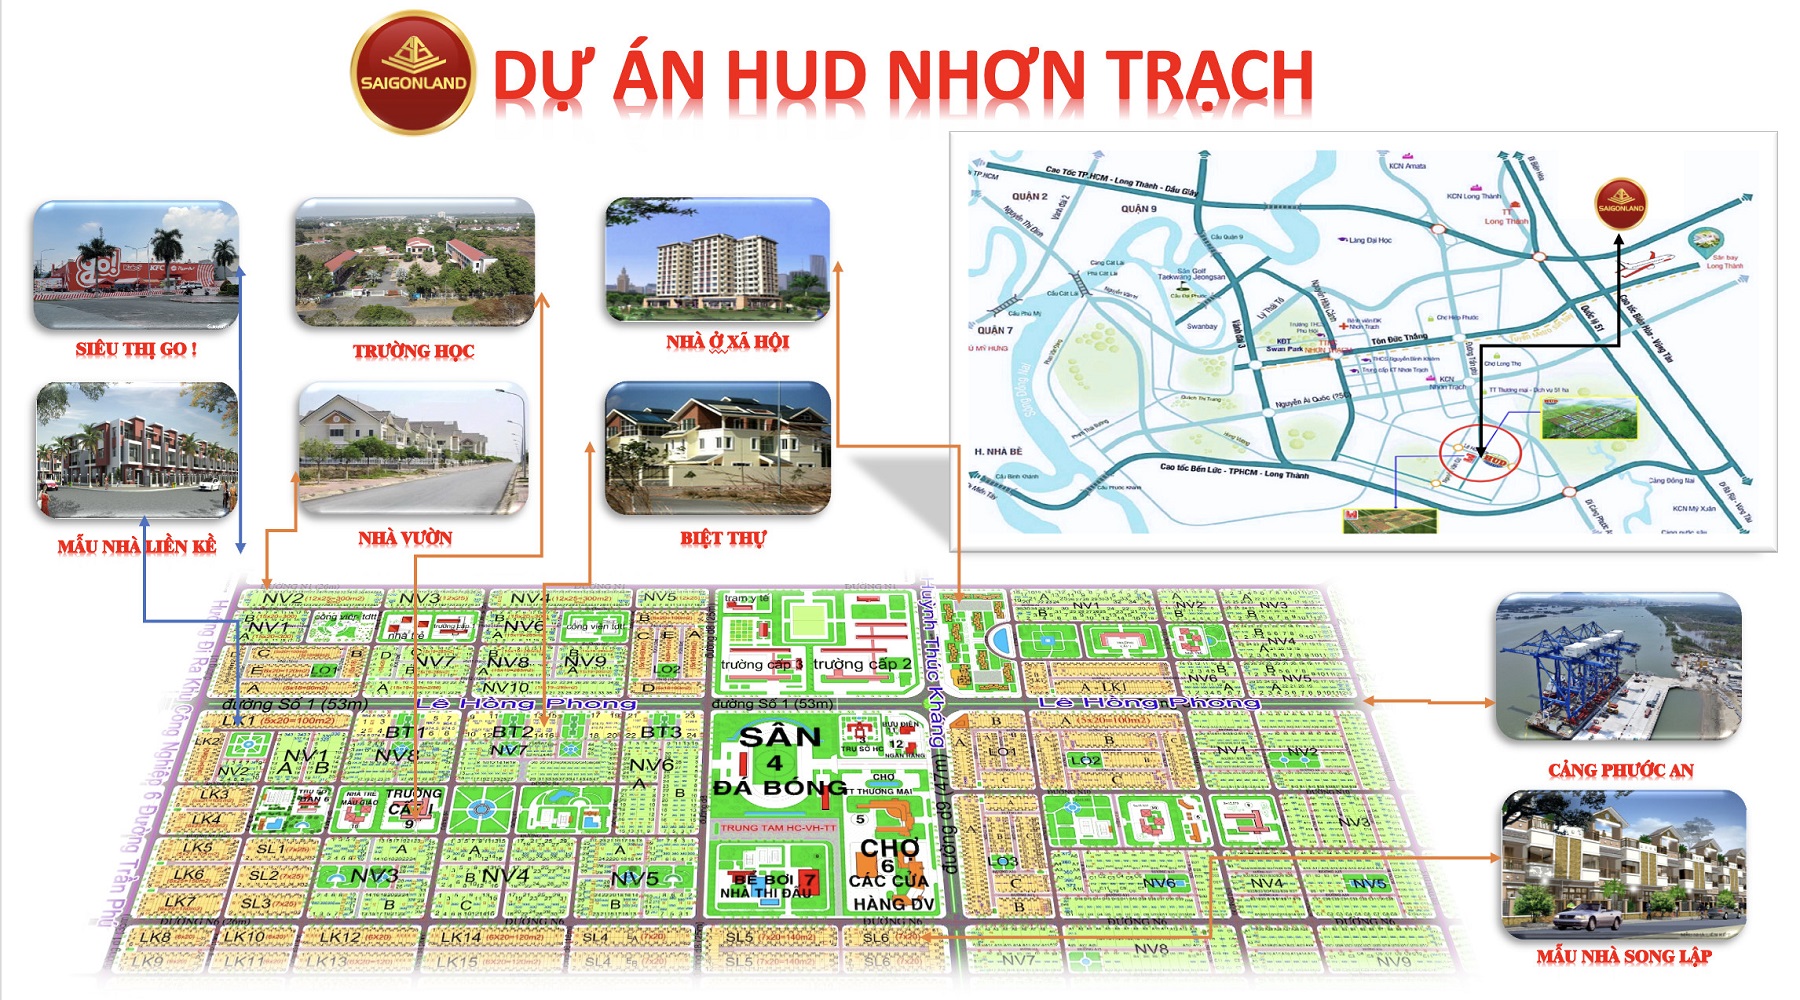 Saigonland Nhơn Trạch - Mua bán đất Nhơn Trạch - Dự án Hud Nhơn Trạch Đồng Nai. - Ảnh 2